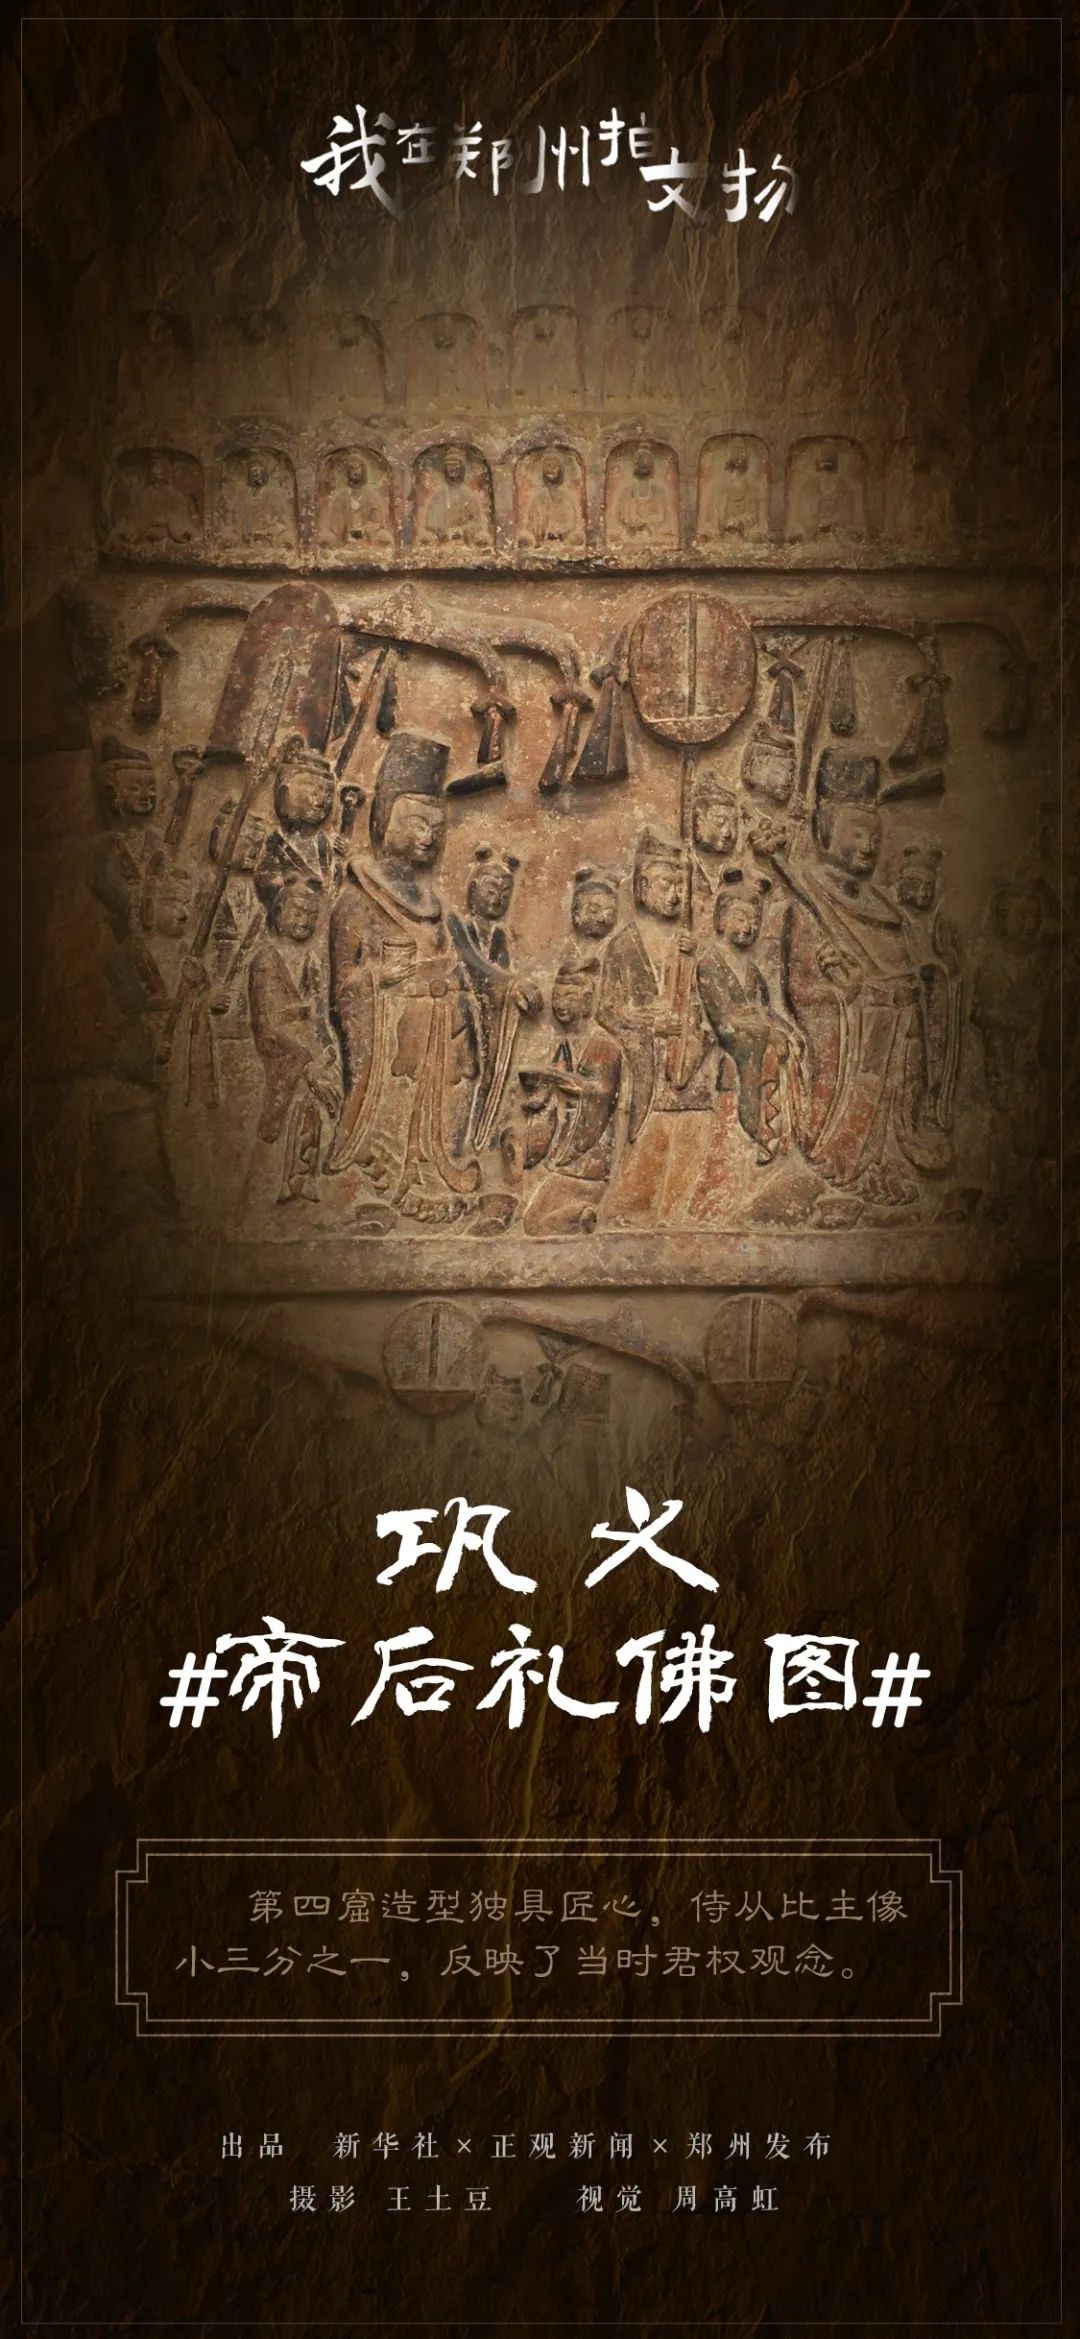 我在郑州拍文物④ |巩义石窟寺,国内仅存的"帝后礼佛